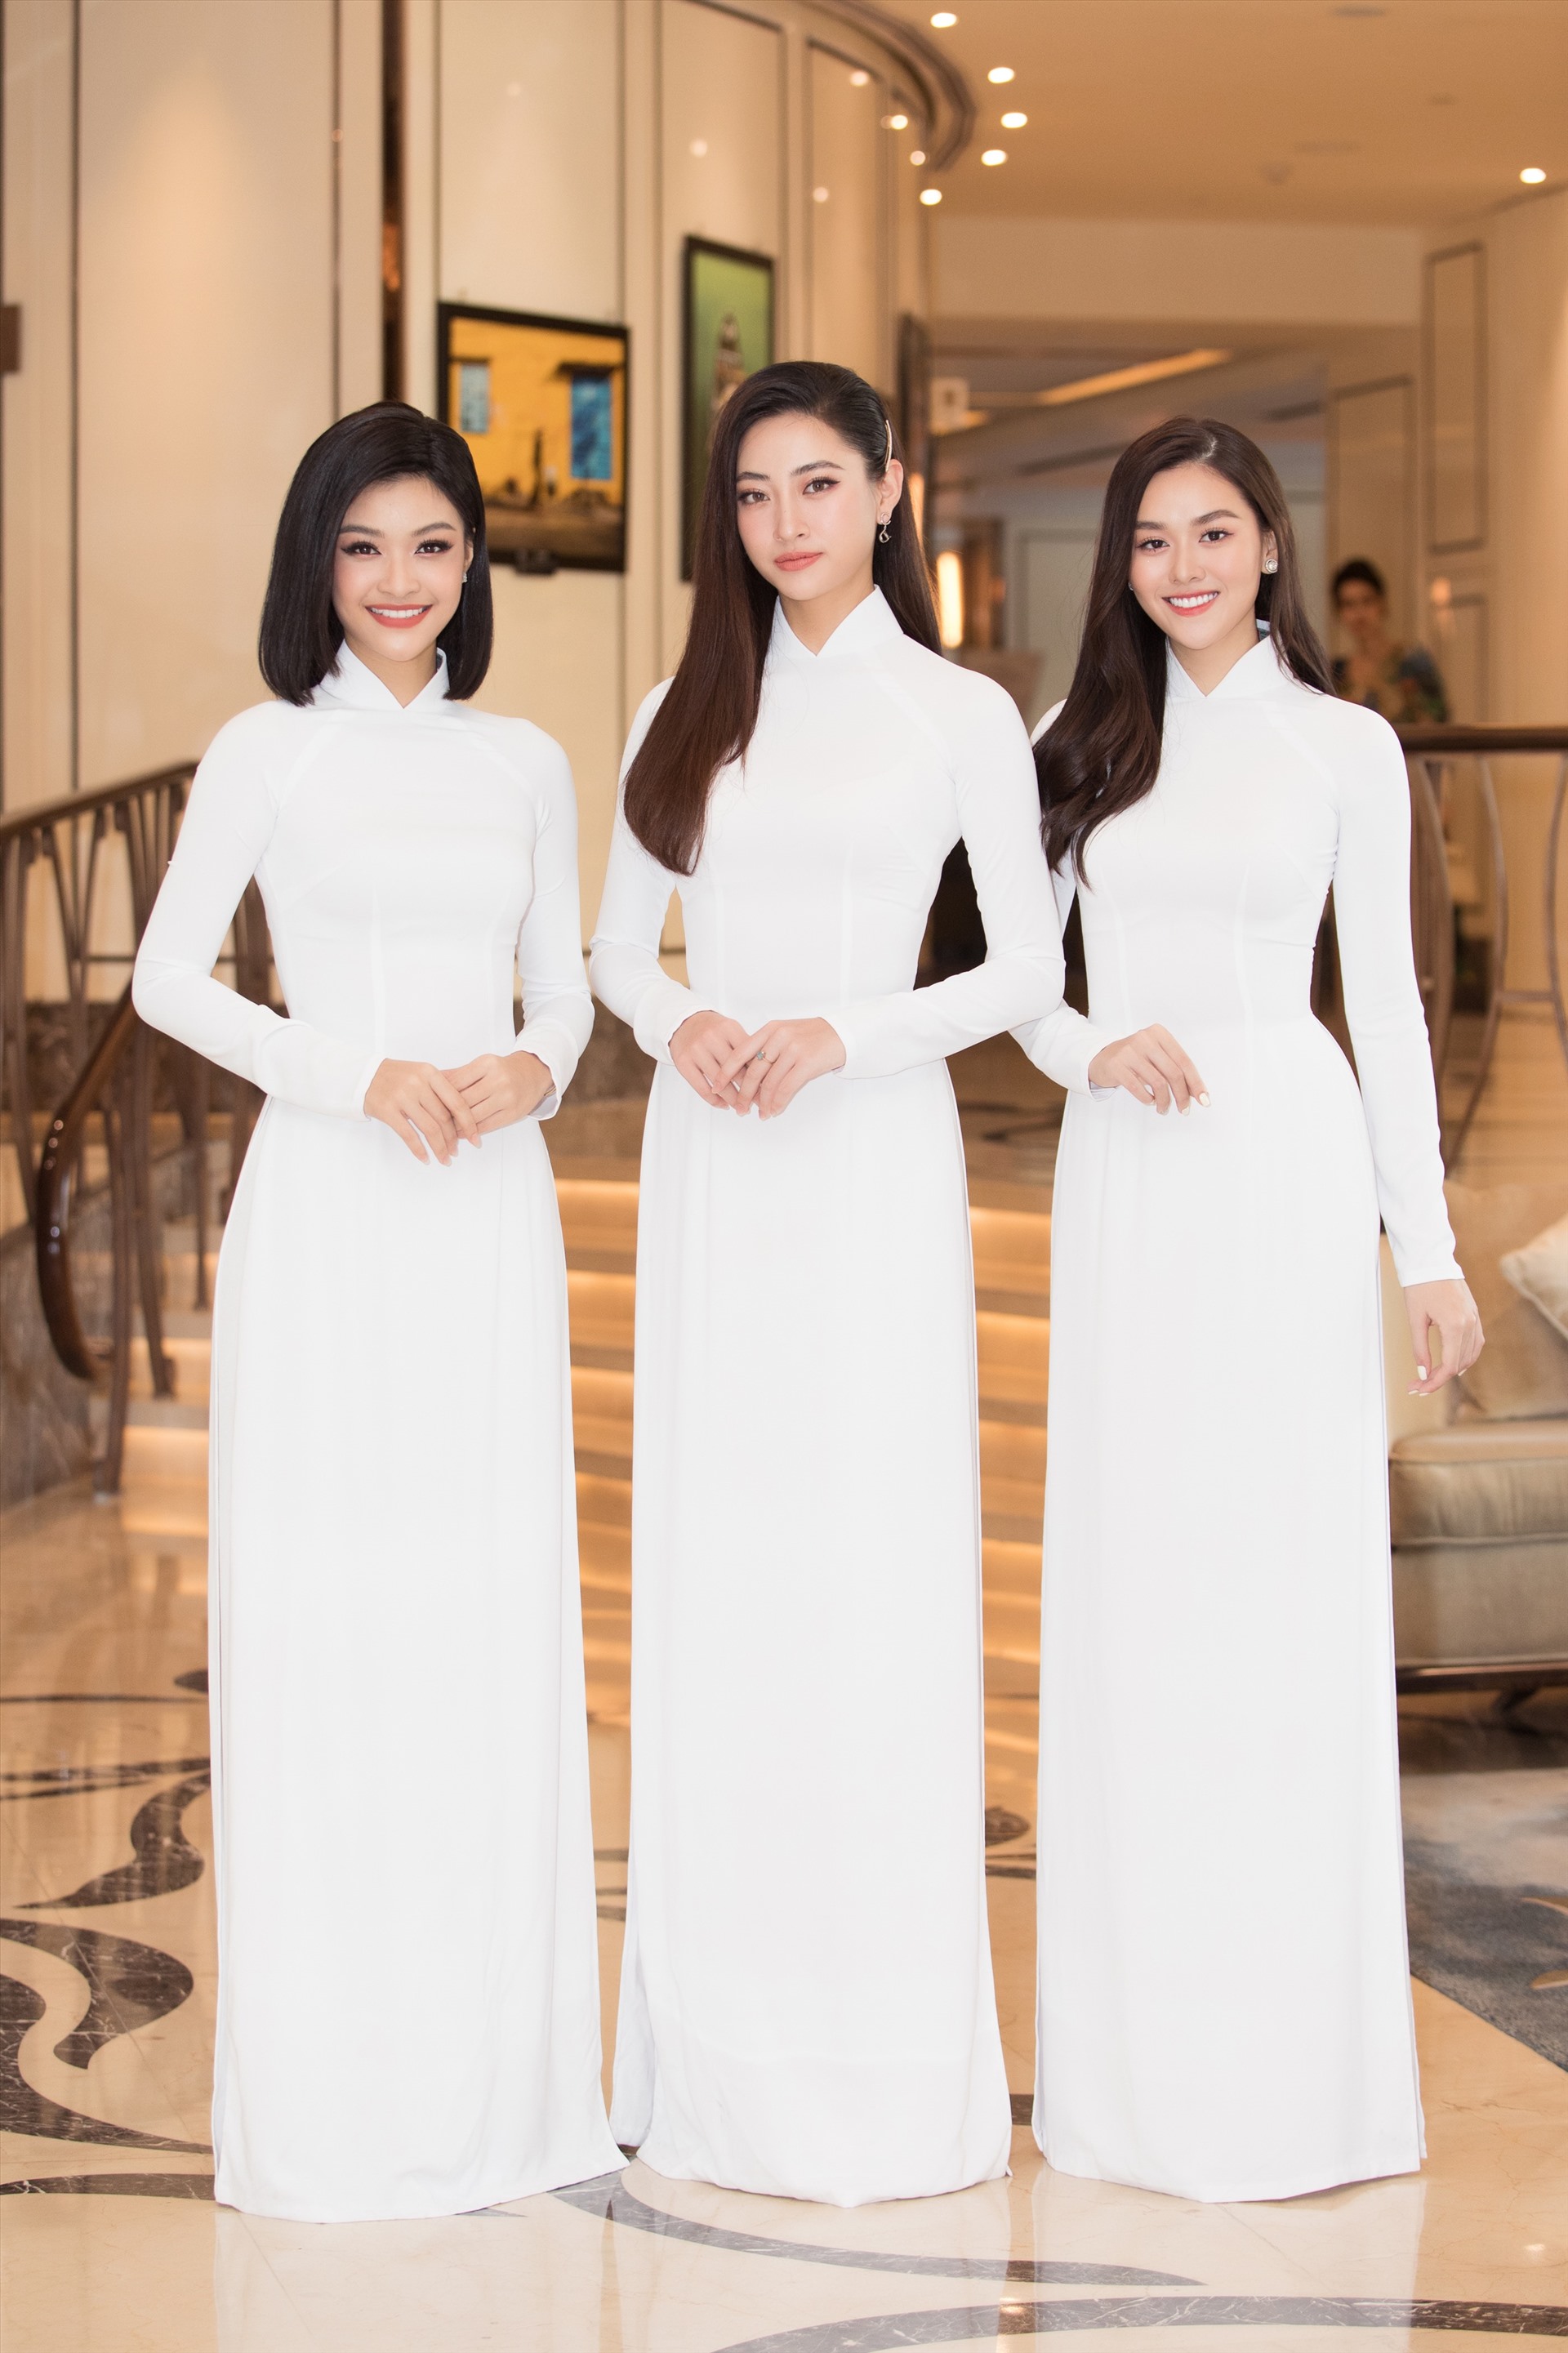 Không chỉ những thế, buổi họp báo lần này còn có sự xuất hiện của Top 3 Miss World Vietnam. Chưa đầy 1 năm đăng quang nhưng nhan sắc của ba nàng hậu Lương Thùy Linh, Kiều Loan và Tường San đều thăng hạng vượt bậc. Ảnh: Sen Vàng.